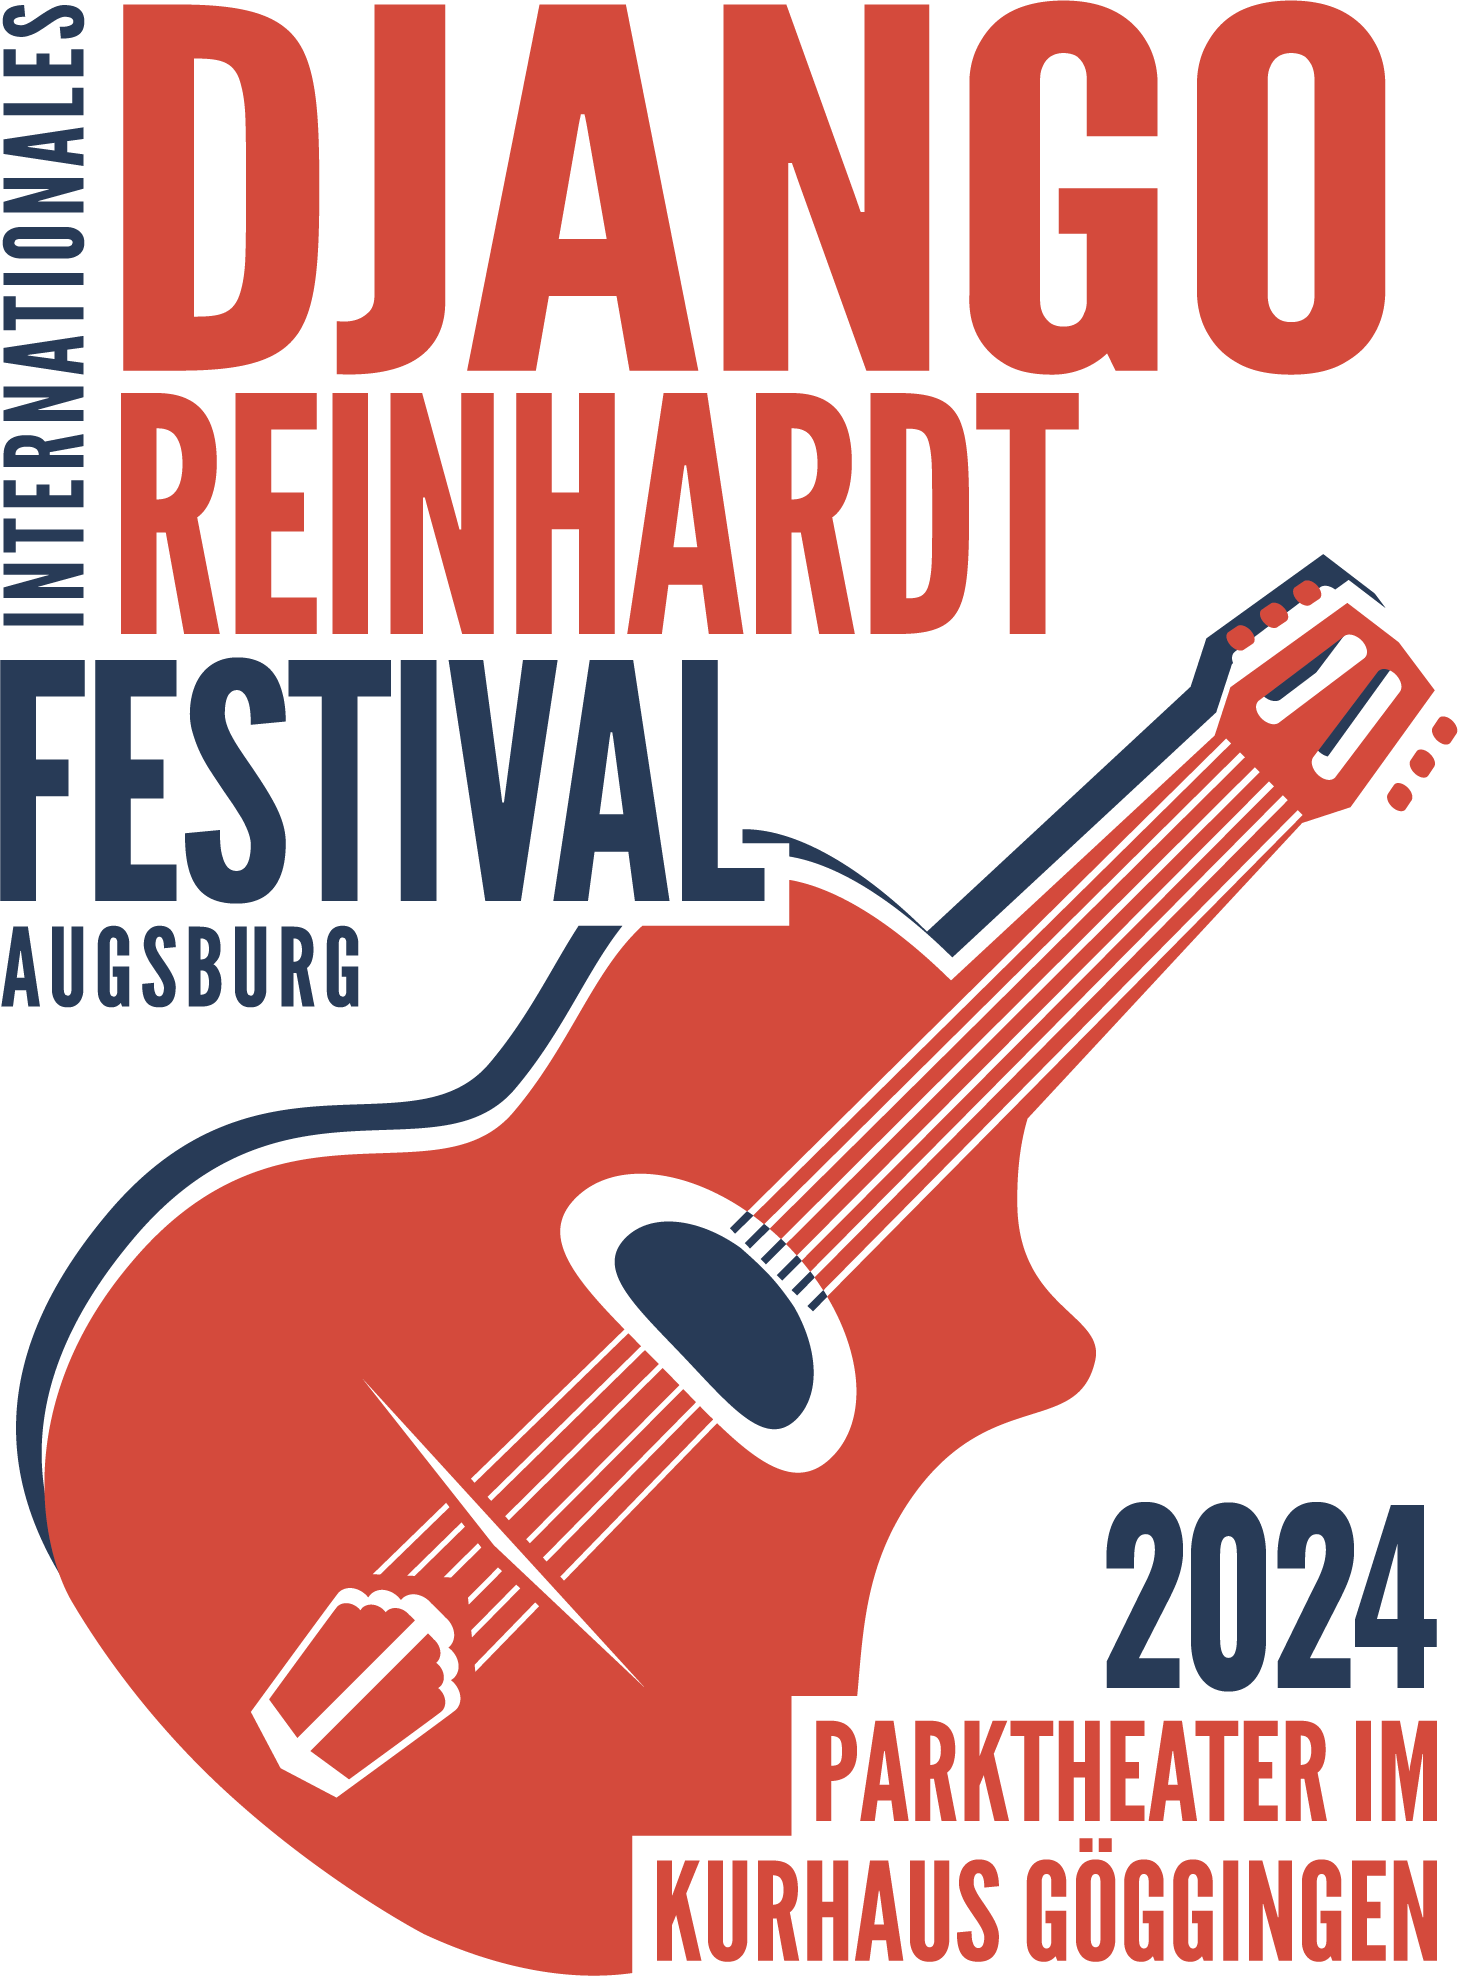 IDRF Logo Festival 2023